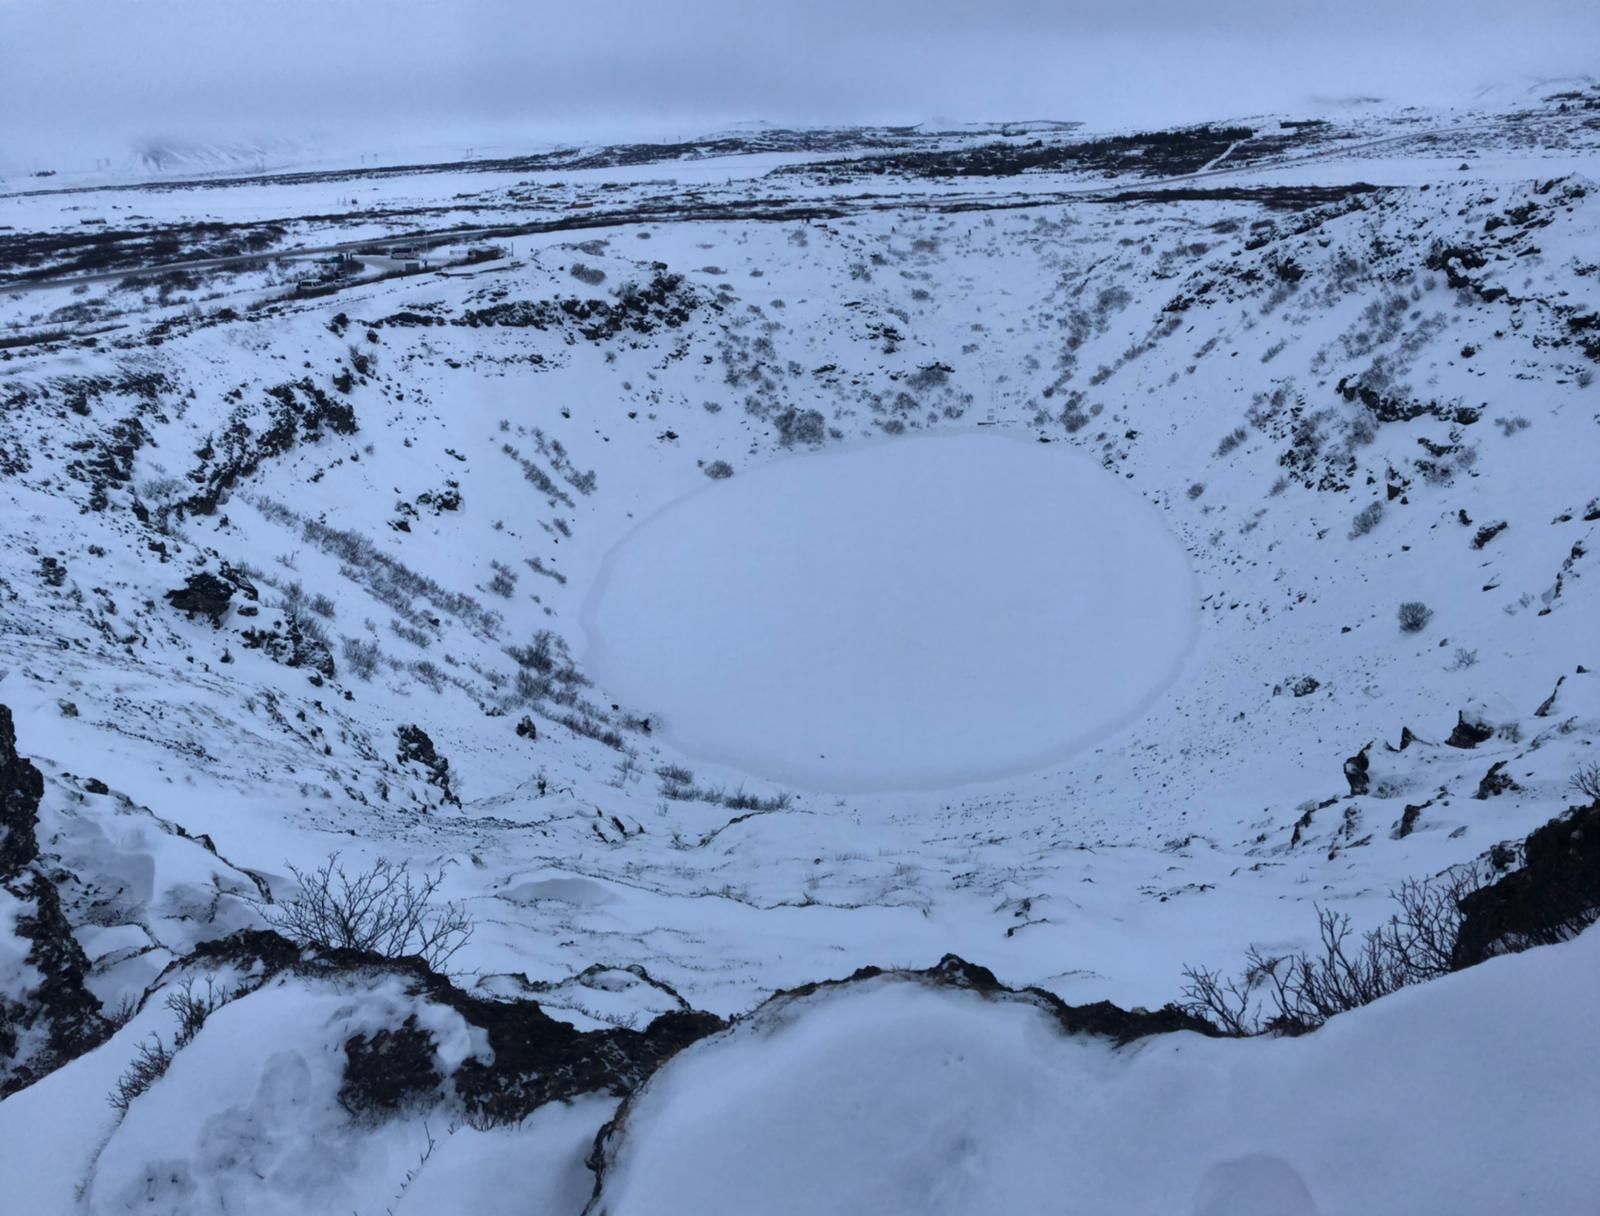 golden circle tour iceland kerid crater